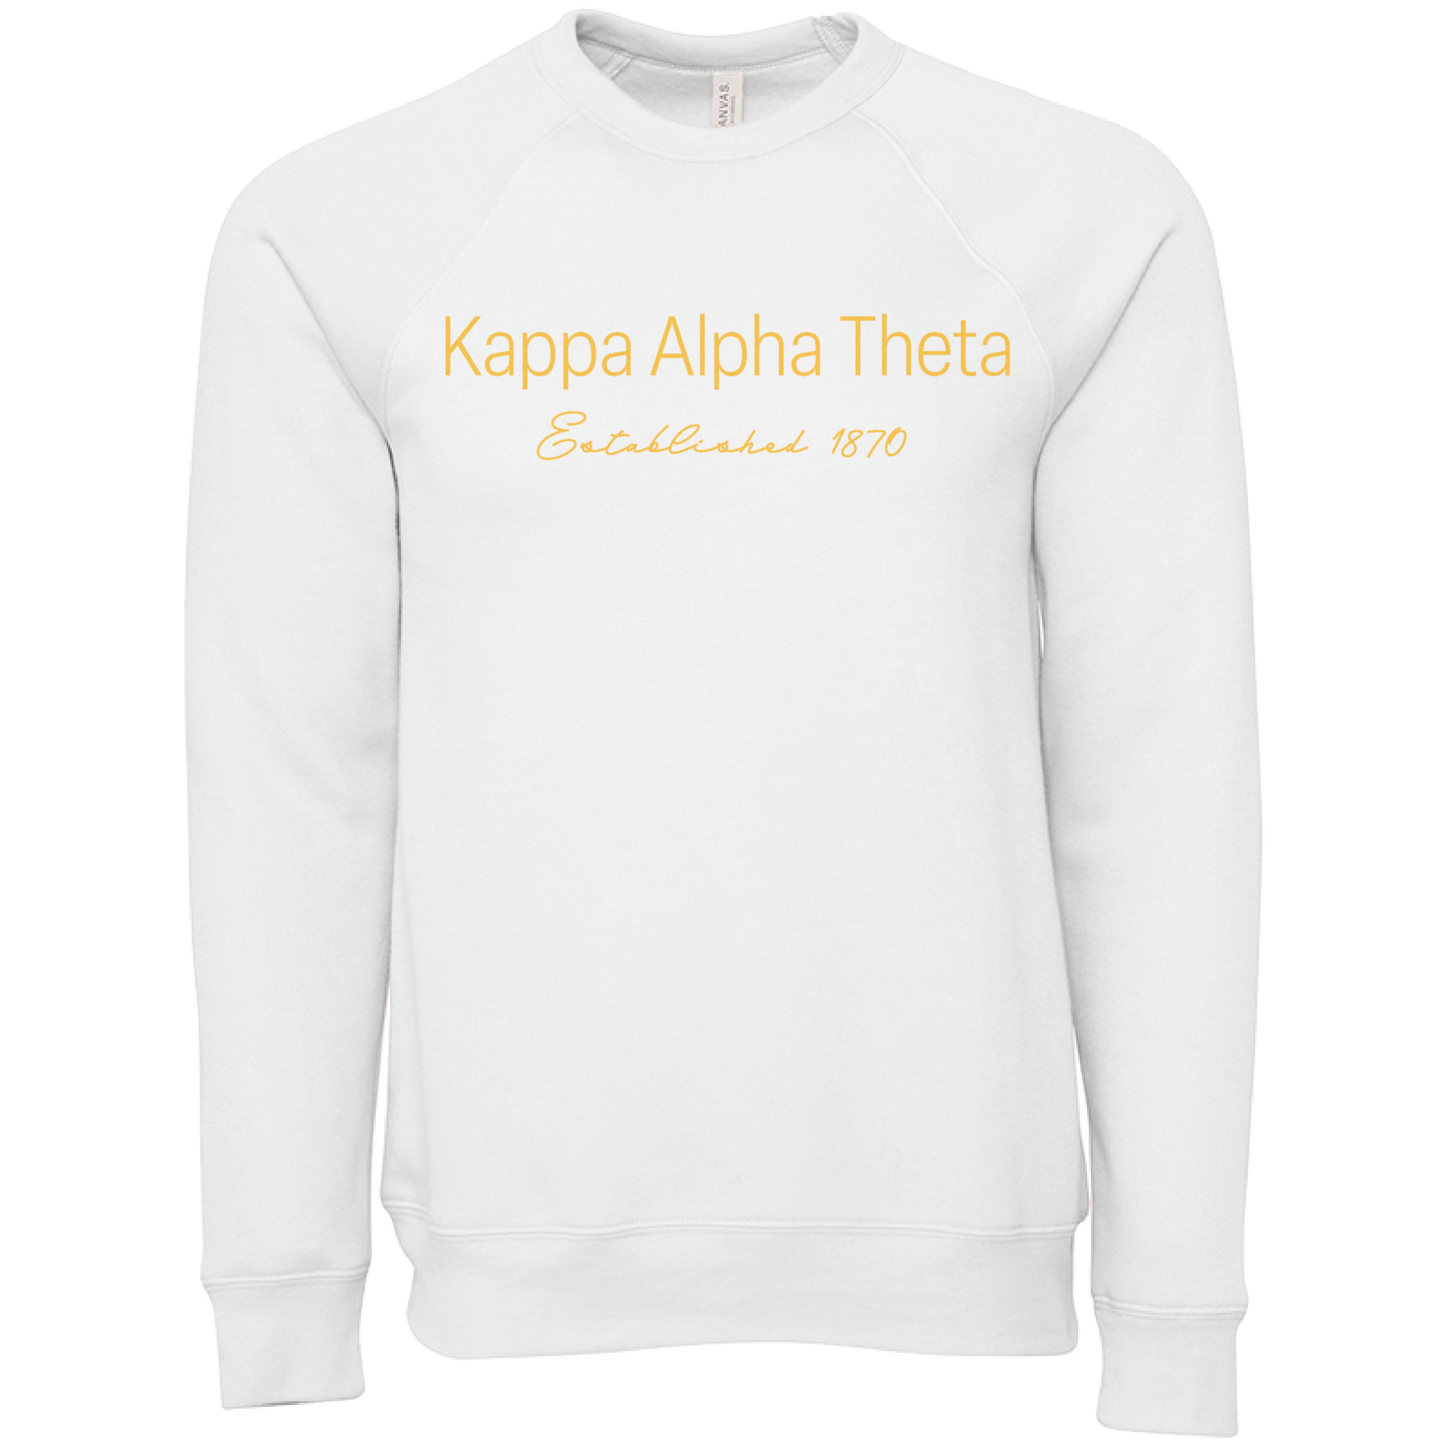 Kappa Alpha Theta Embroidered Printed Name Crewneck Sweatshirts